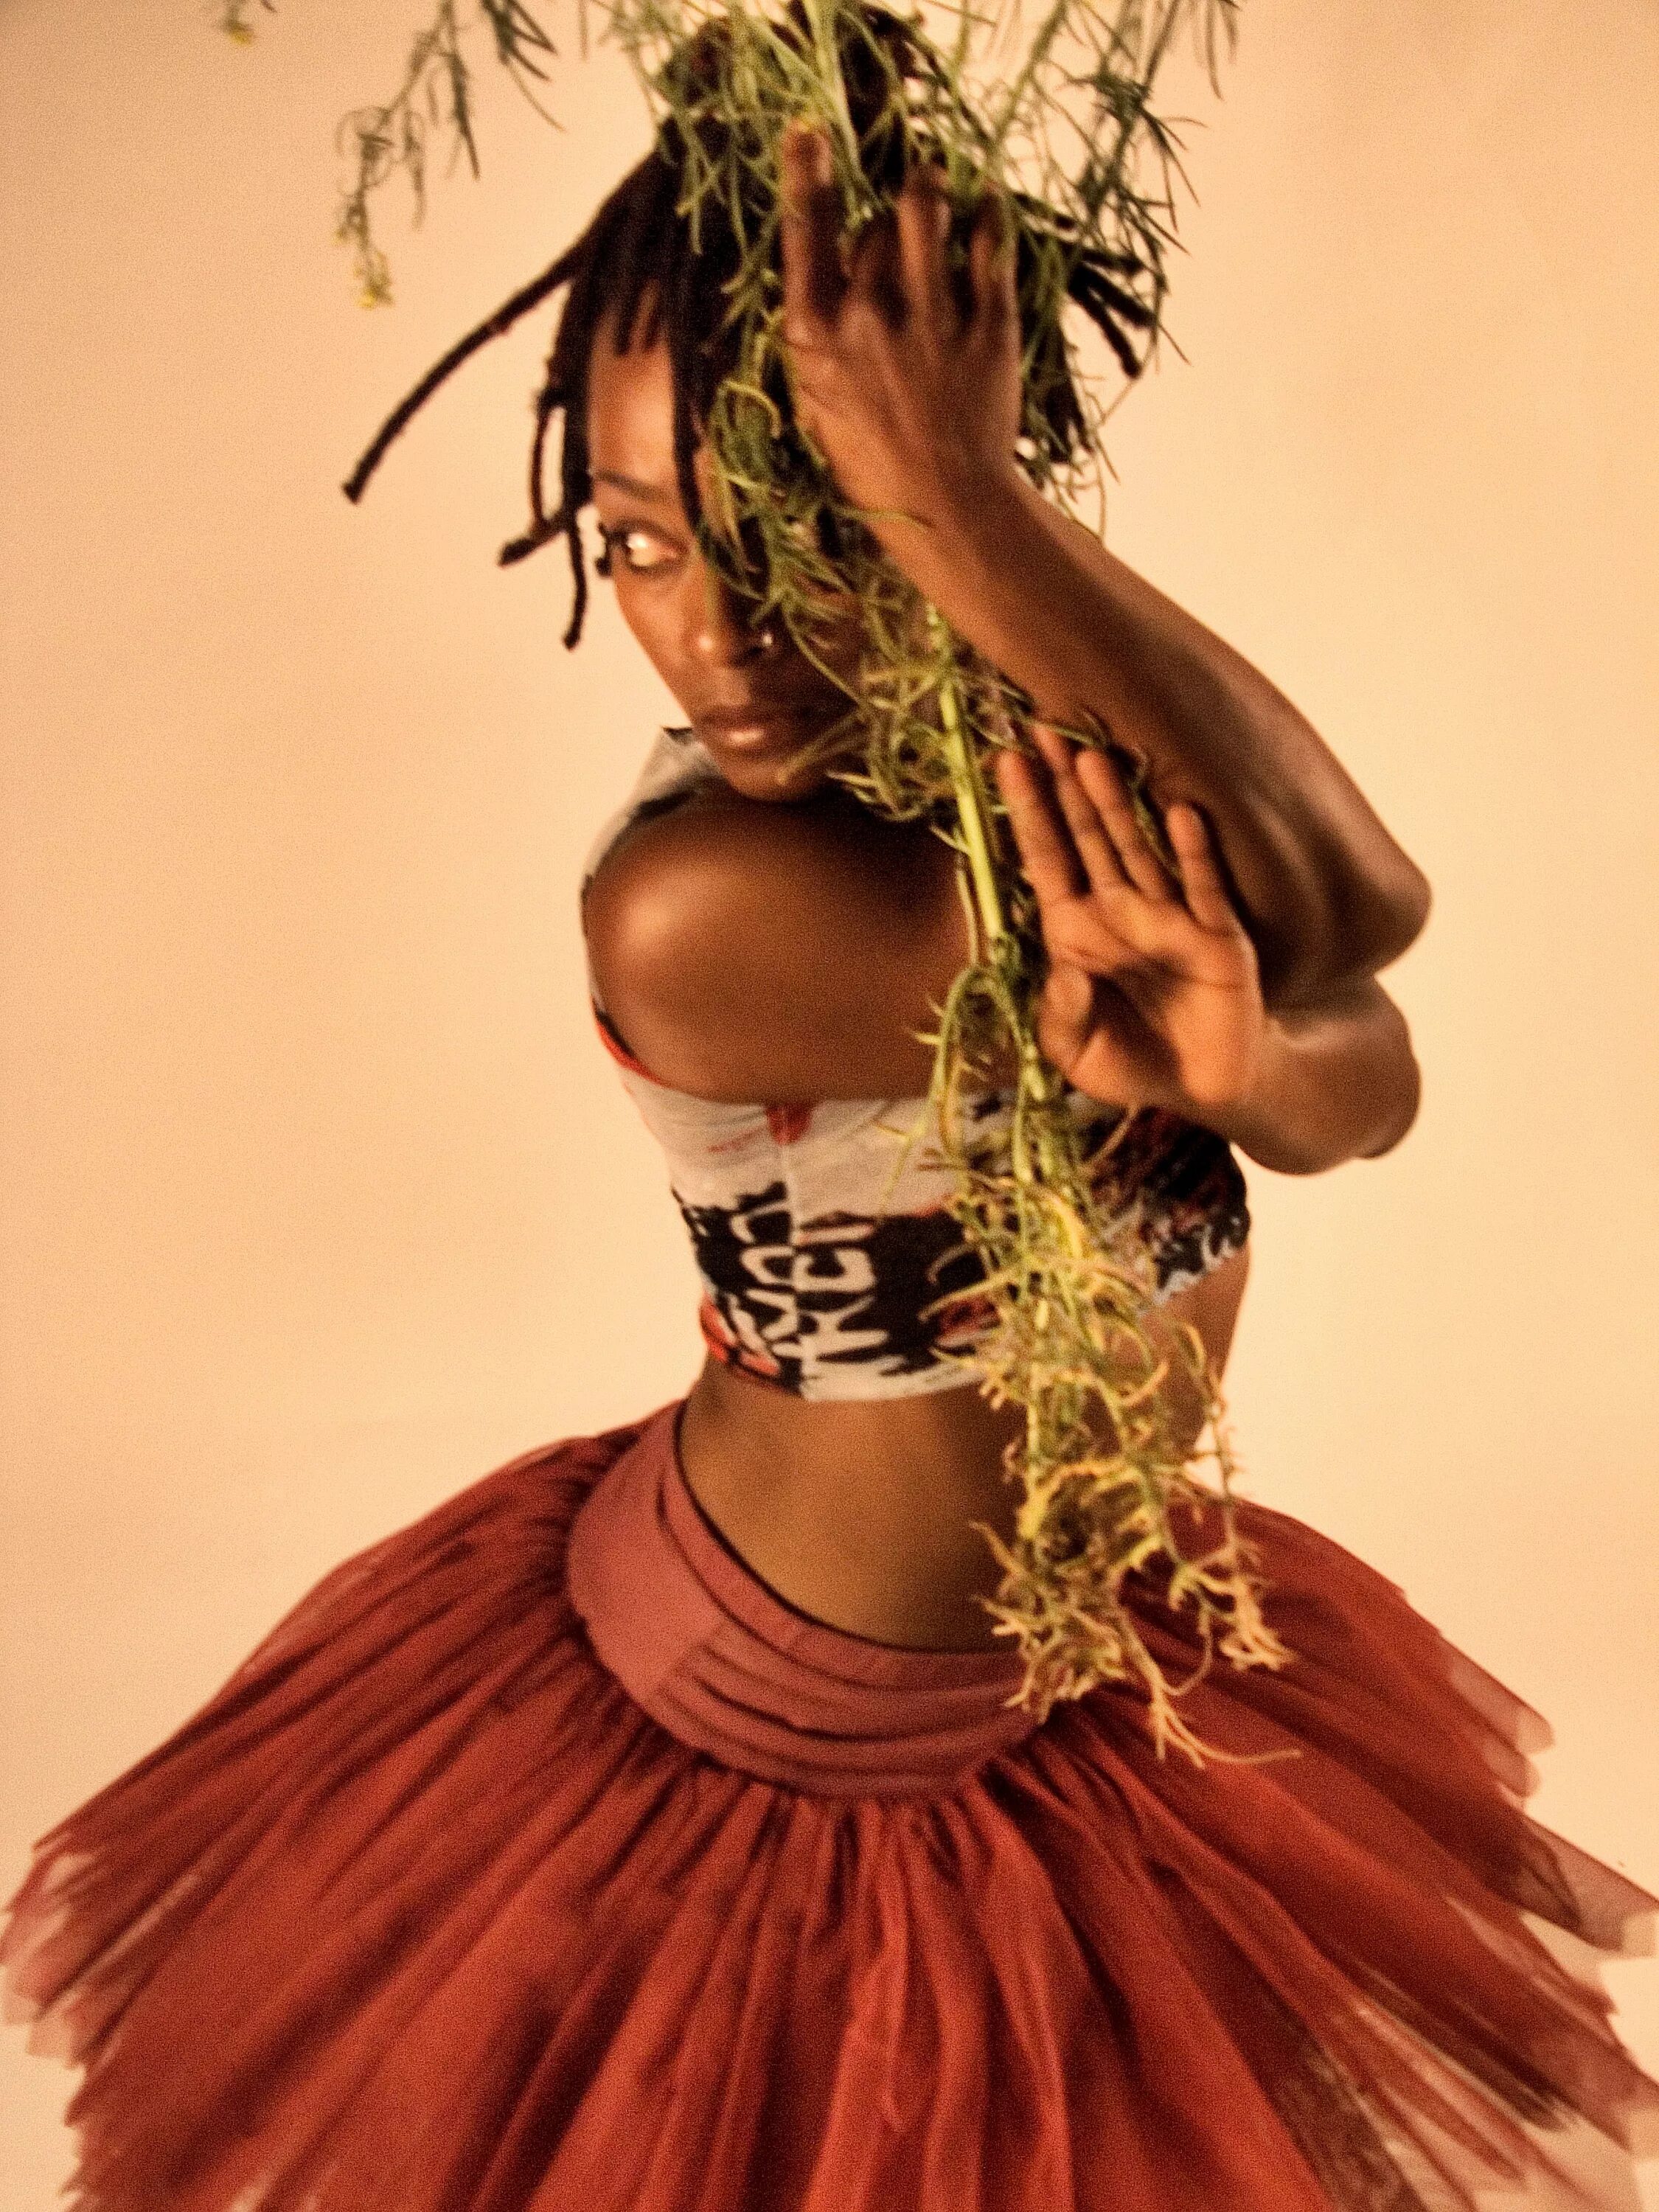 Костюм африканца. Африканские костюмы для танцев. Африканский женский костюм. Танец Африки. Чернокожая танцует